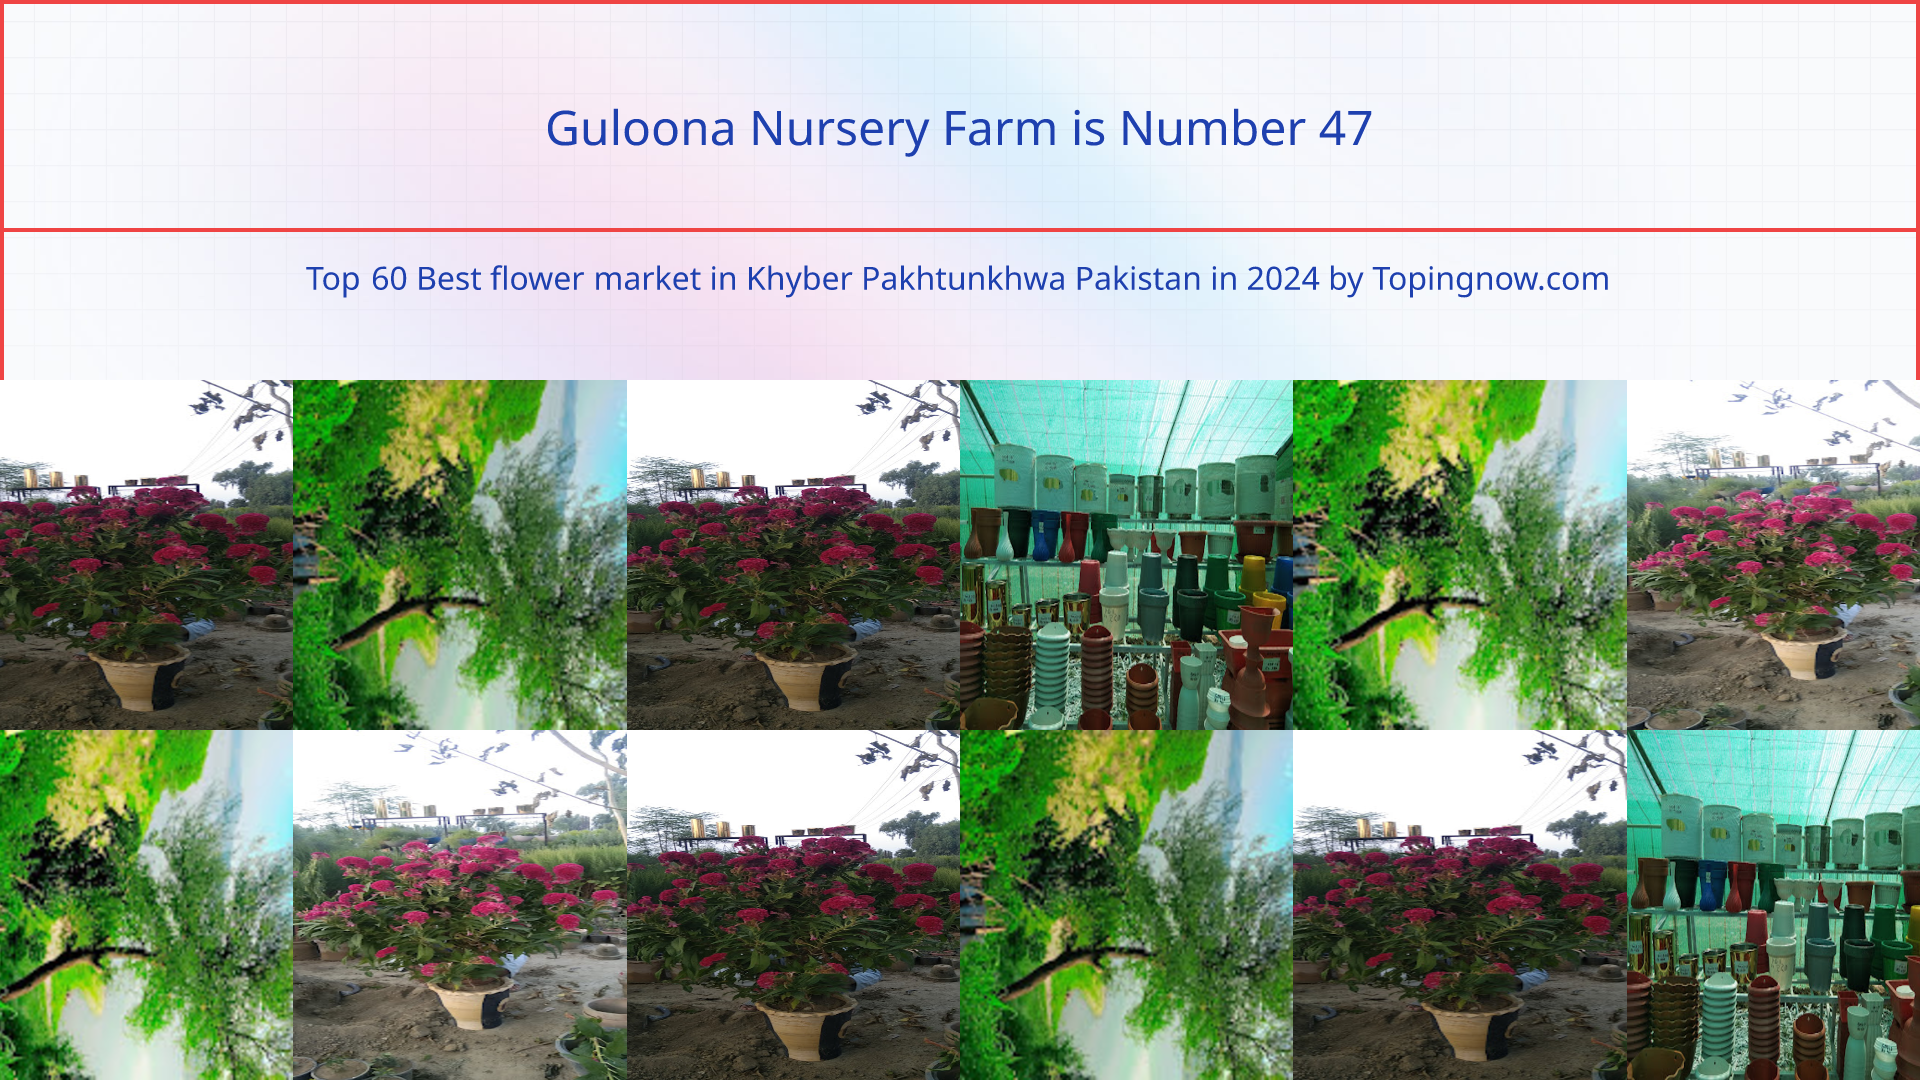 Guloona Nursery Farm: Top 60 Best flower market in Khyber Pakhtunkhwa Pakistan in 2024